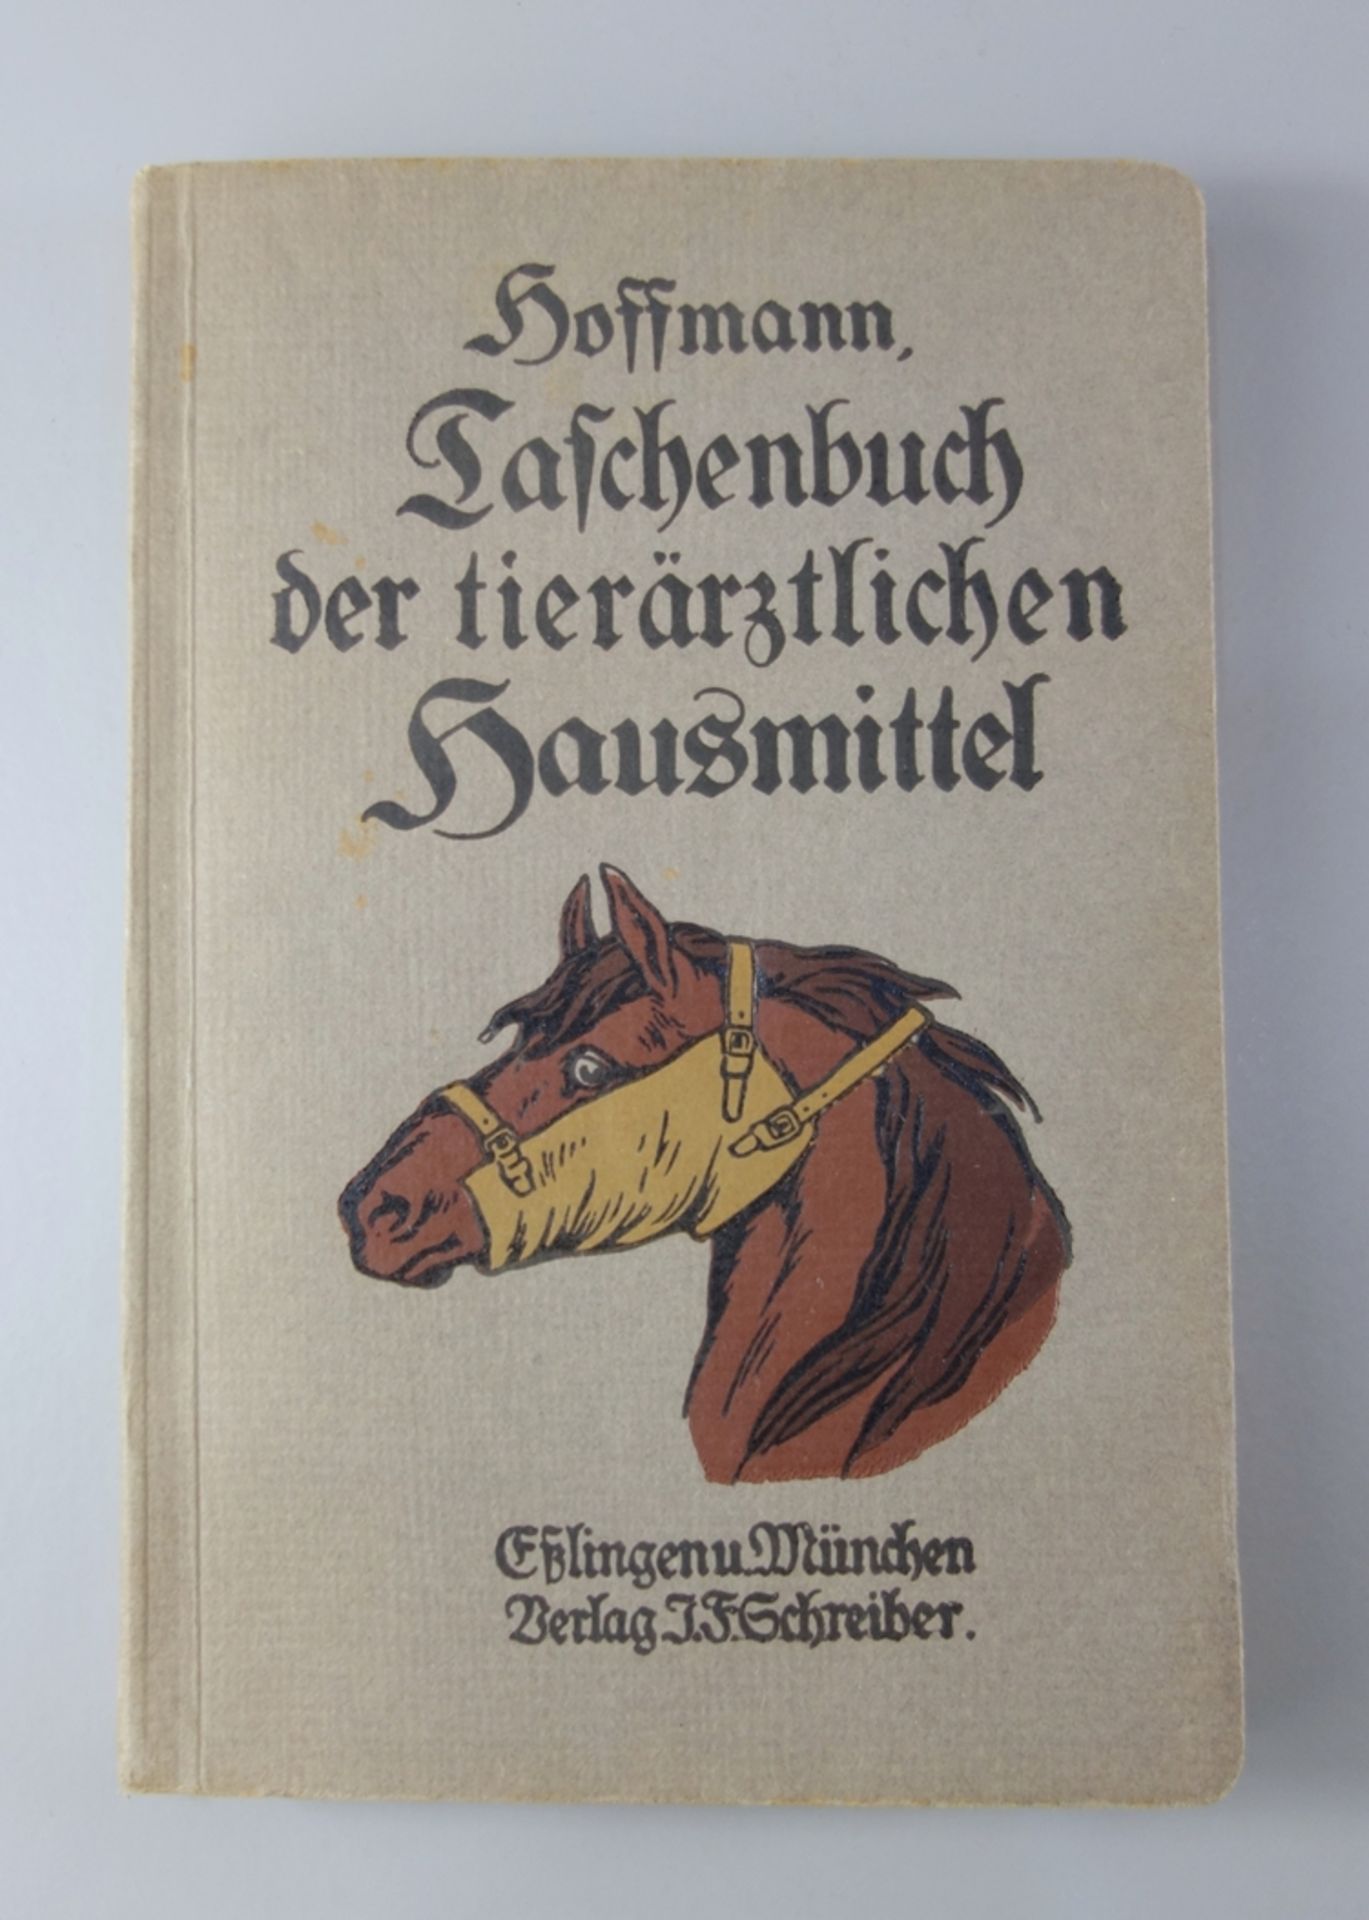 Taschenbuch der tierärztlichen Hausmittel, L.Hoffmann, 1919, mit besonderer Berücksichtigung der